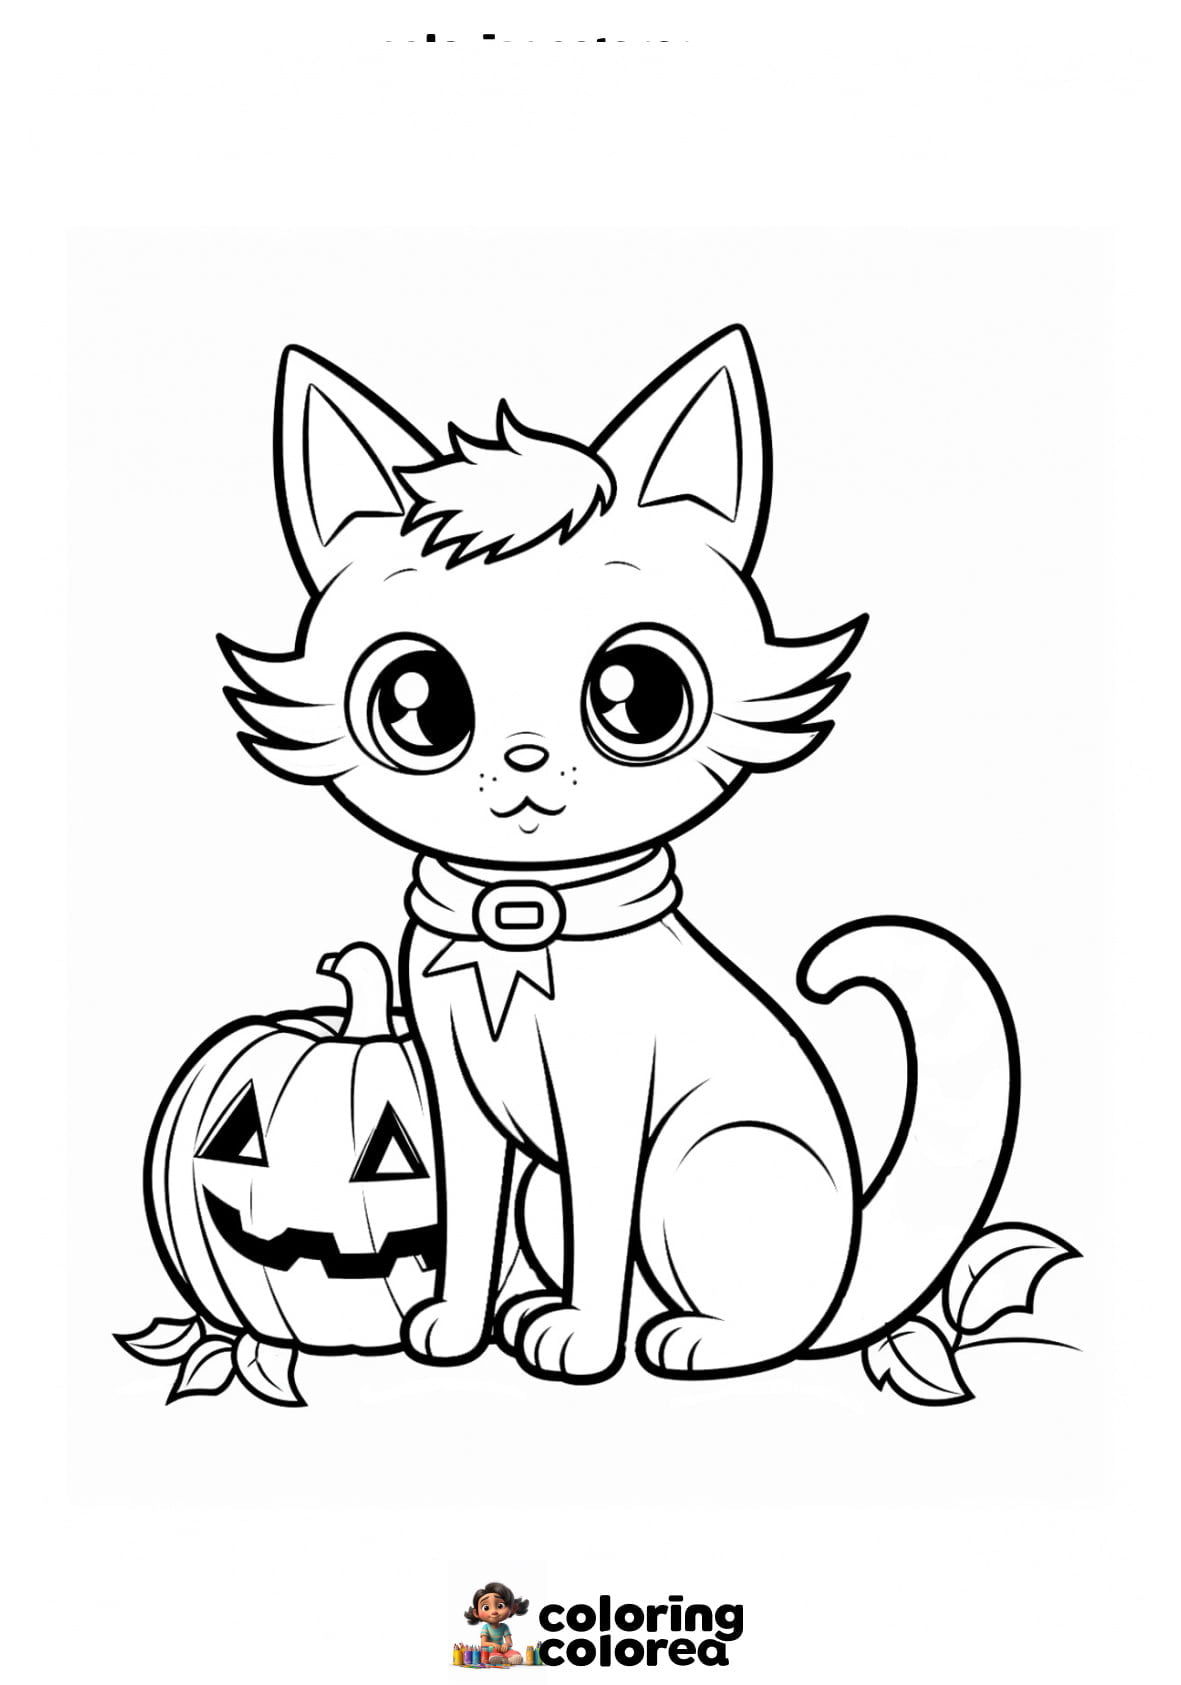 Dibujo para colorear de un gatito en Halloween con calabaza